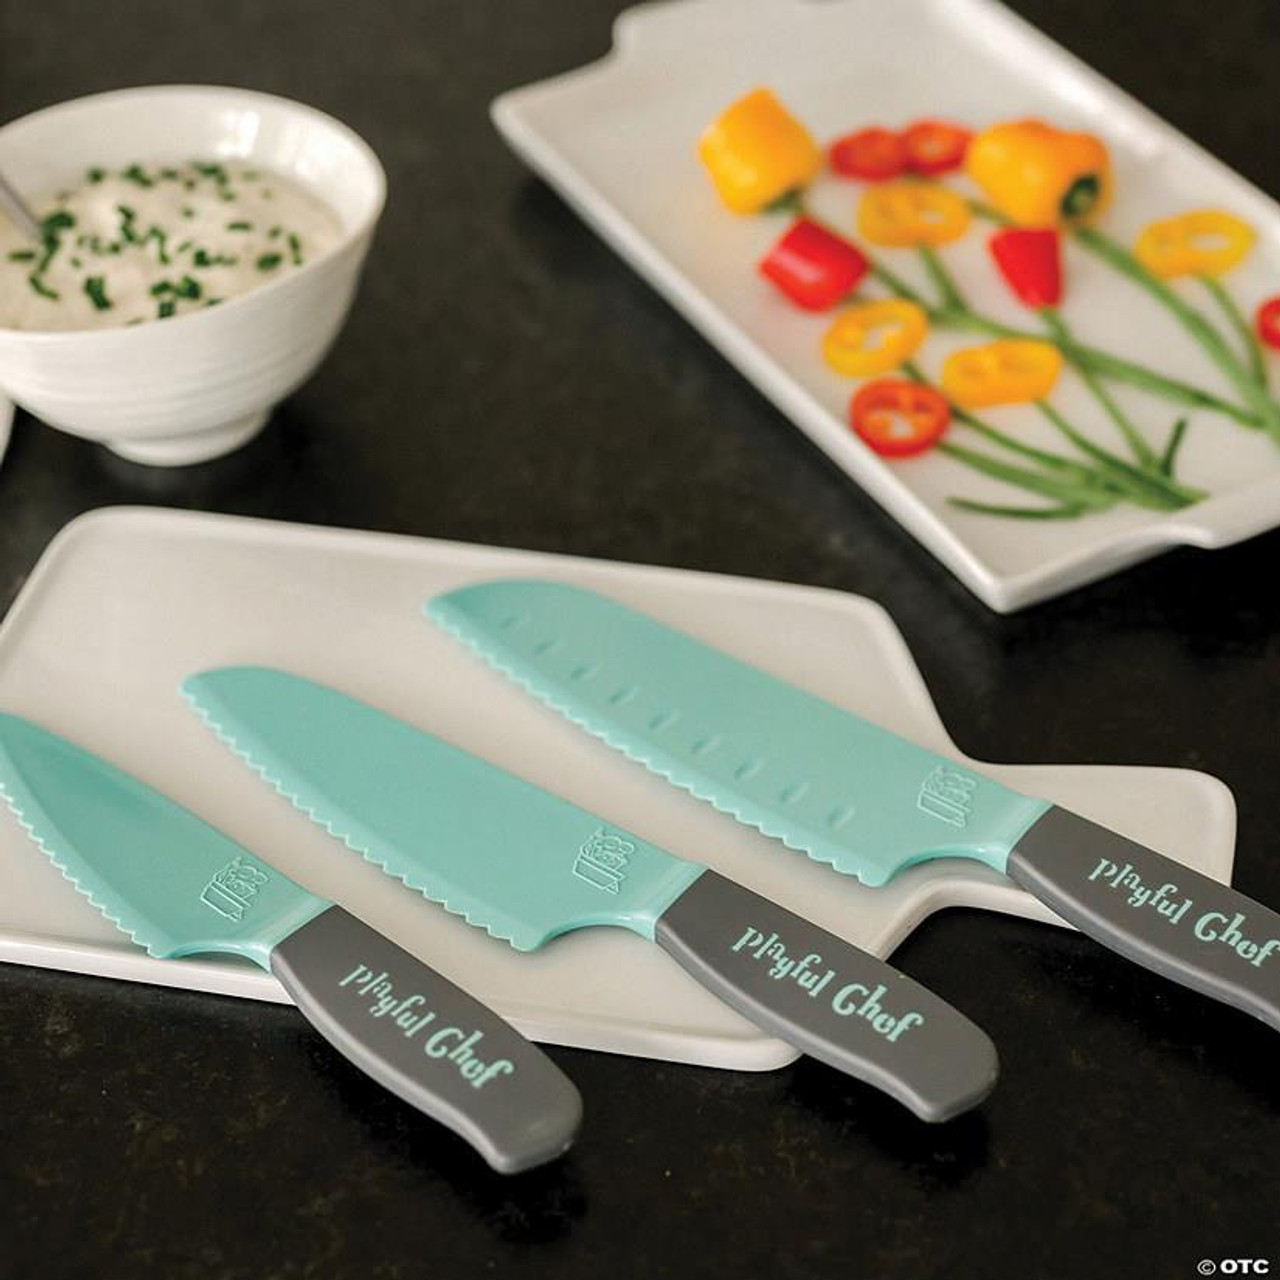 Playful Chef: Safety Knife Set